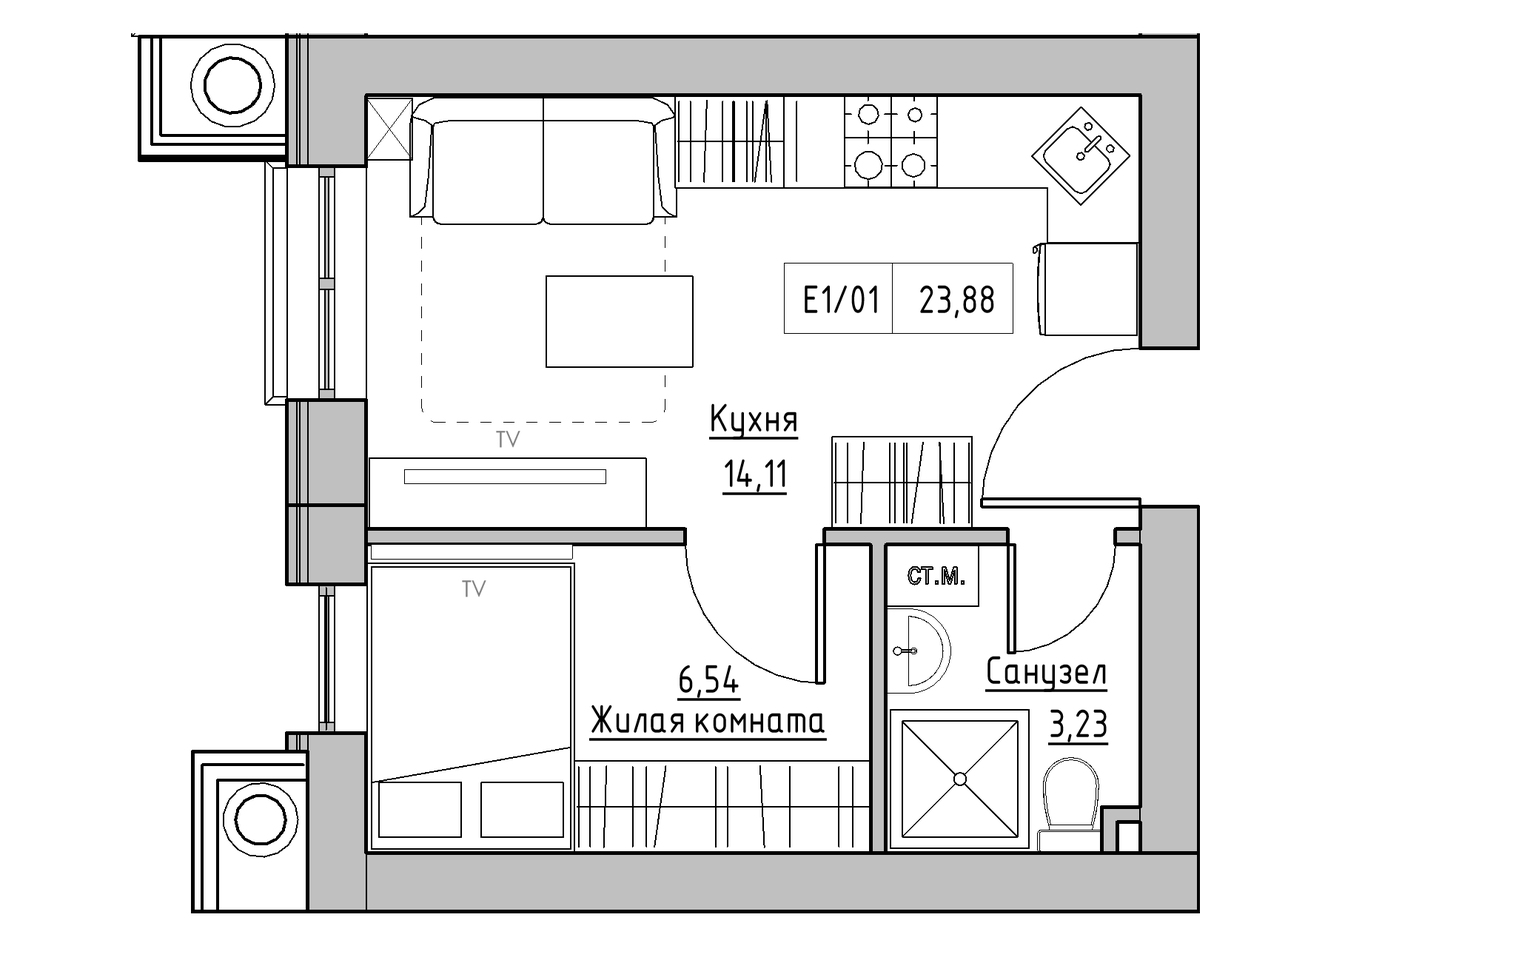 Планування 1-к квартира площею 23.88м2, KS-009-04/0003.